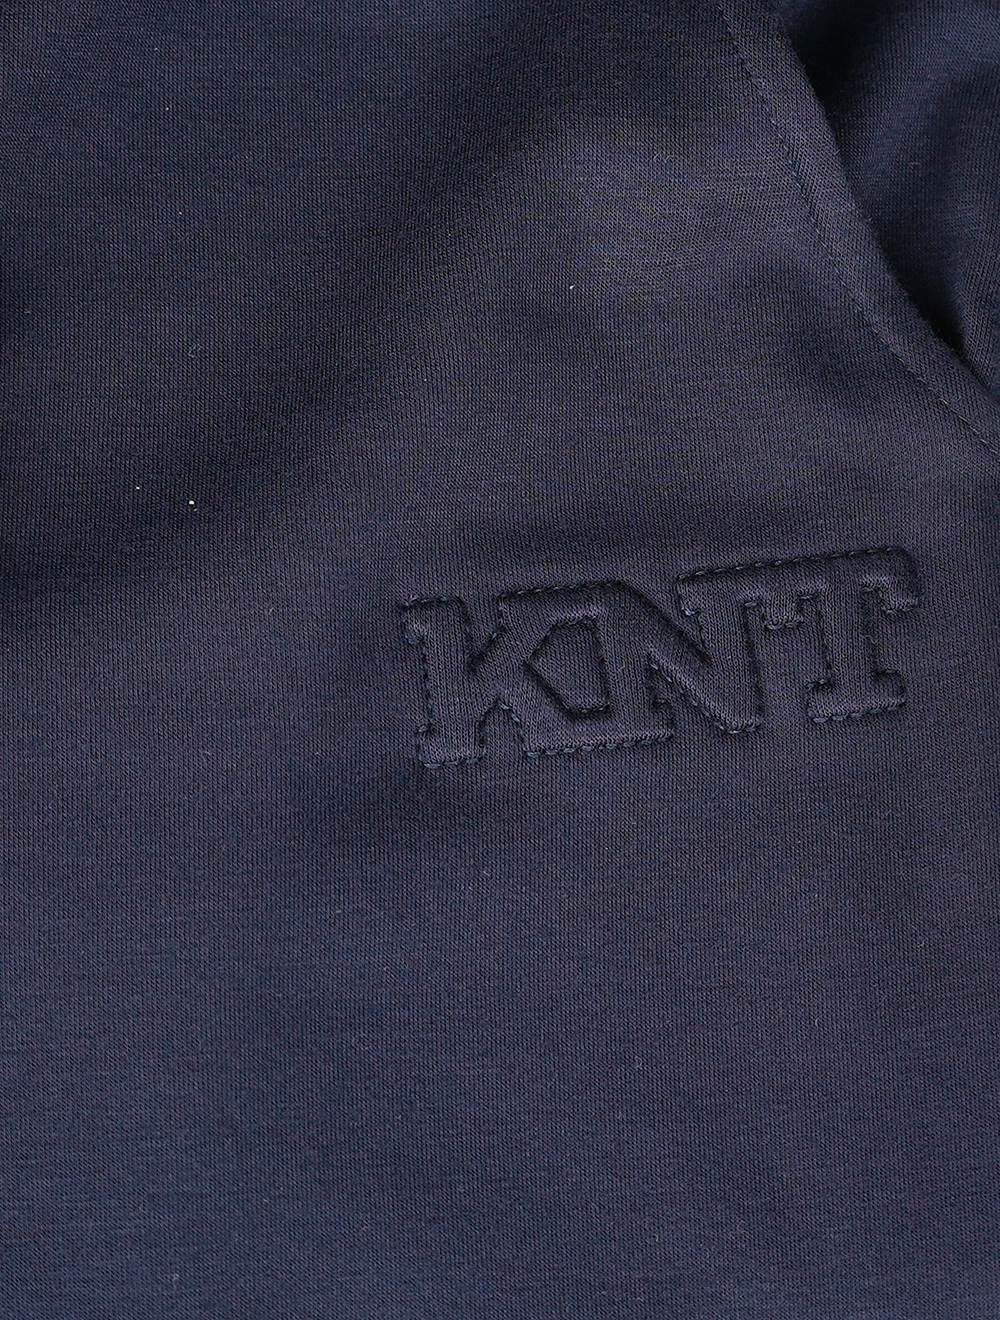 Pantalón corto Knt Kiton de algodón azul